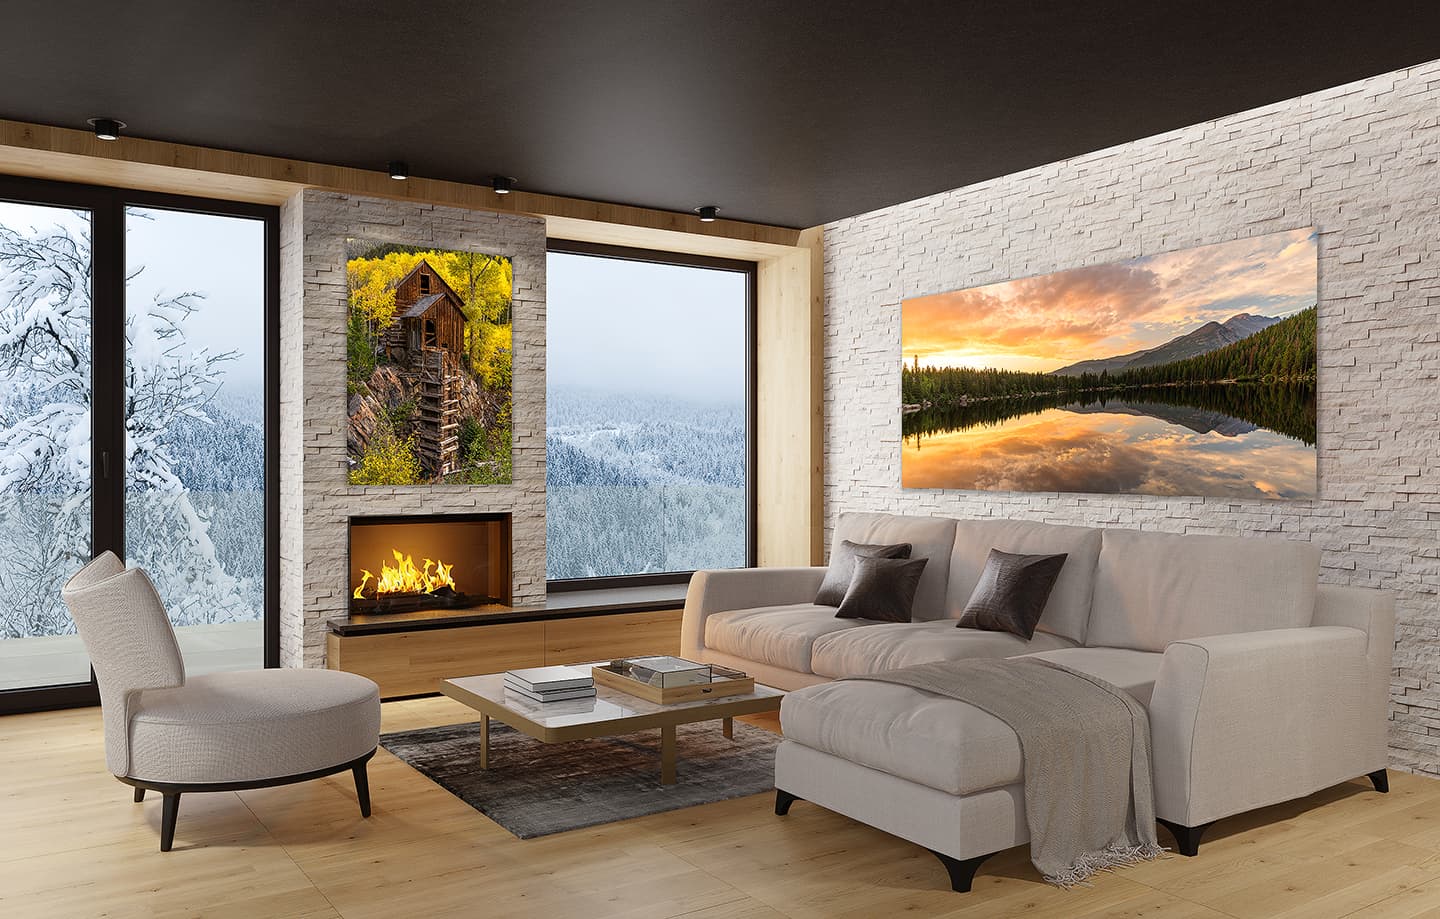 Colorado Mountain Cabin Interior Design